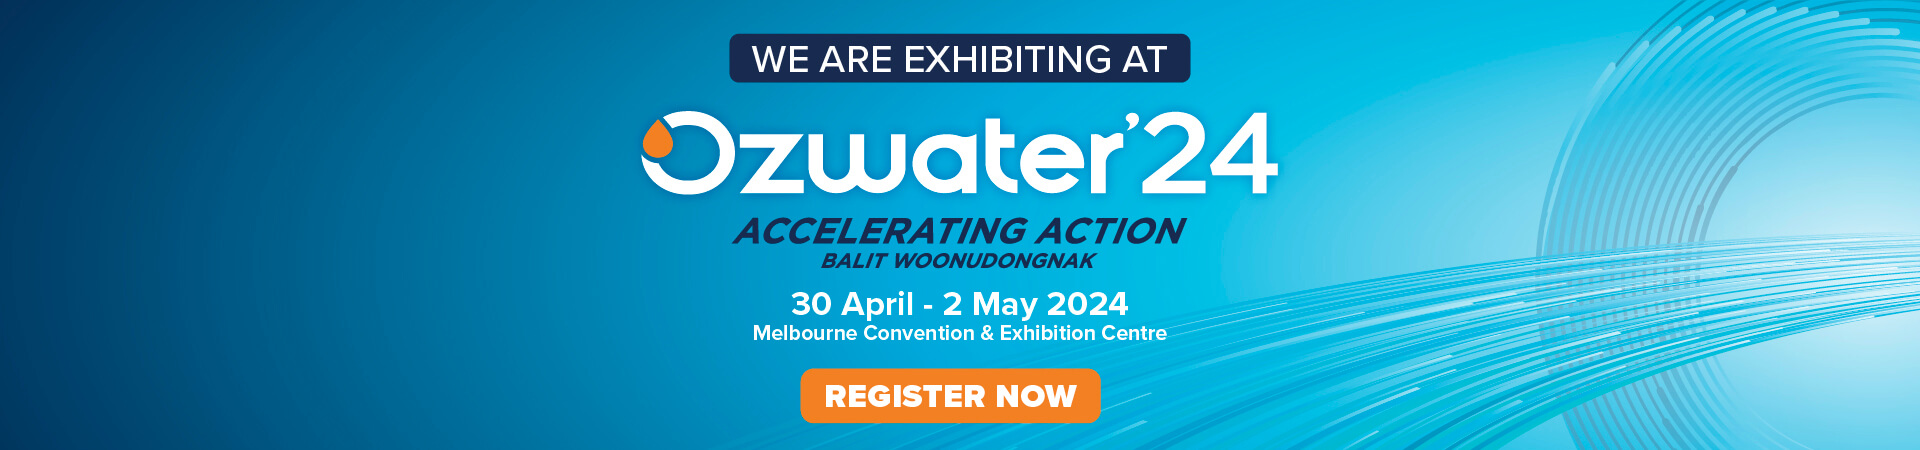 ozwater conference 2024 desktop banner